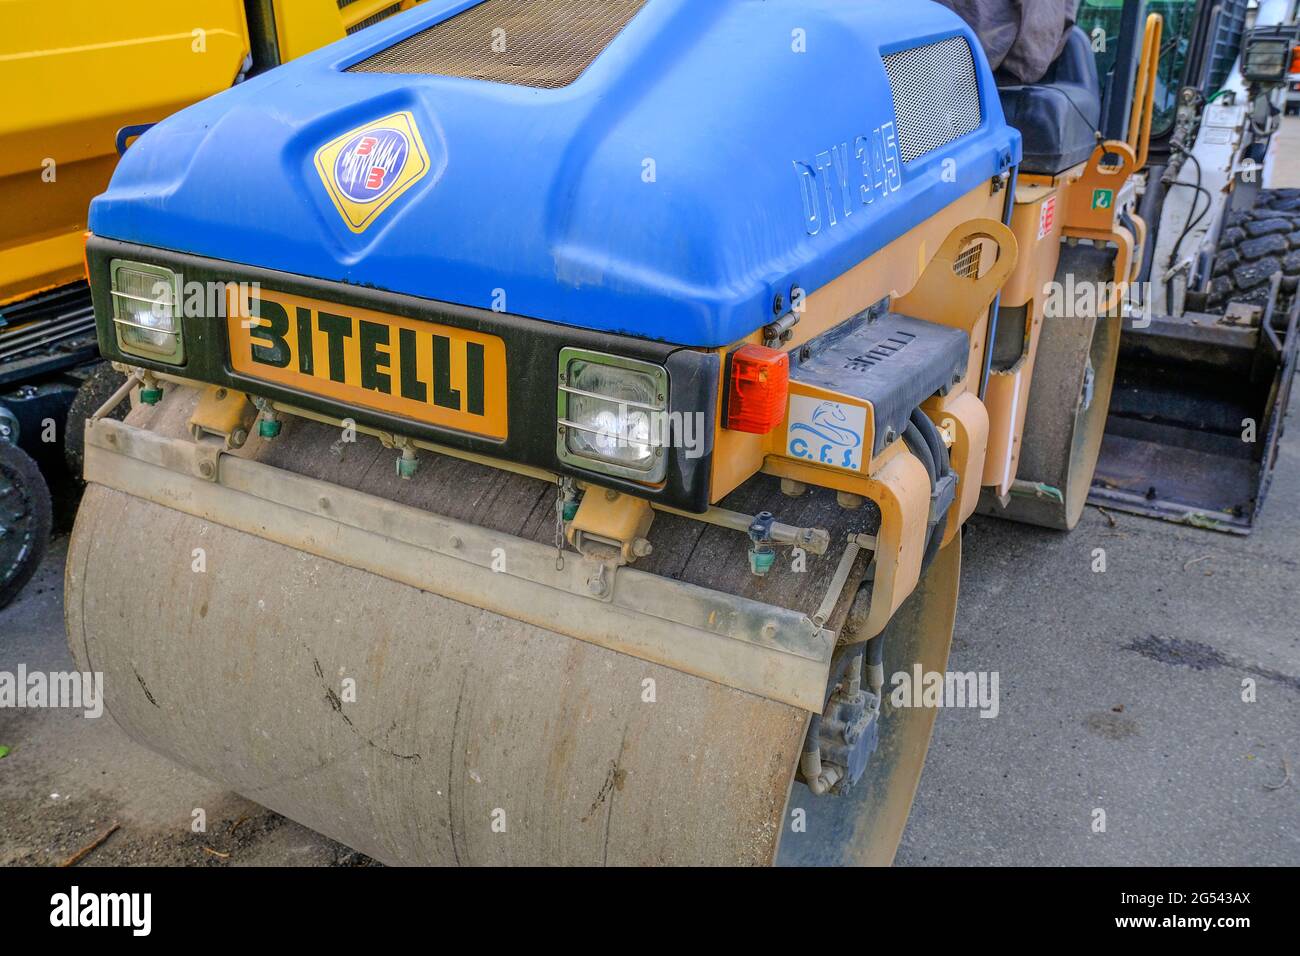 Maggio 2021 Parma, Italia: Asfaltatrice blu macchina stradale Bitelli parcheggiata su altre macchine industriali pesanti Foto Stock